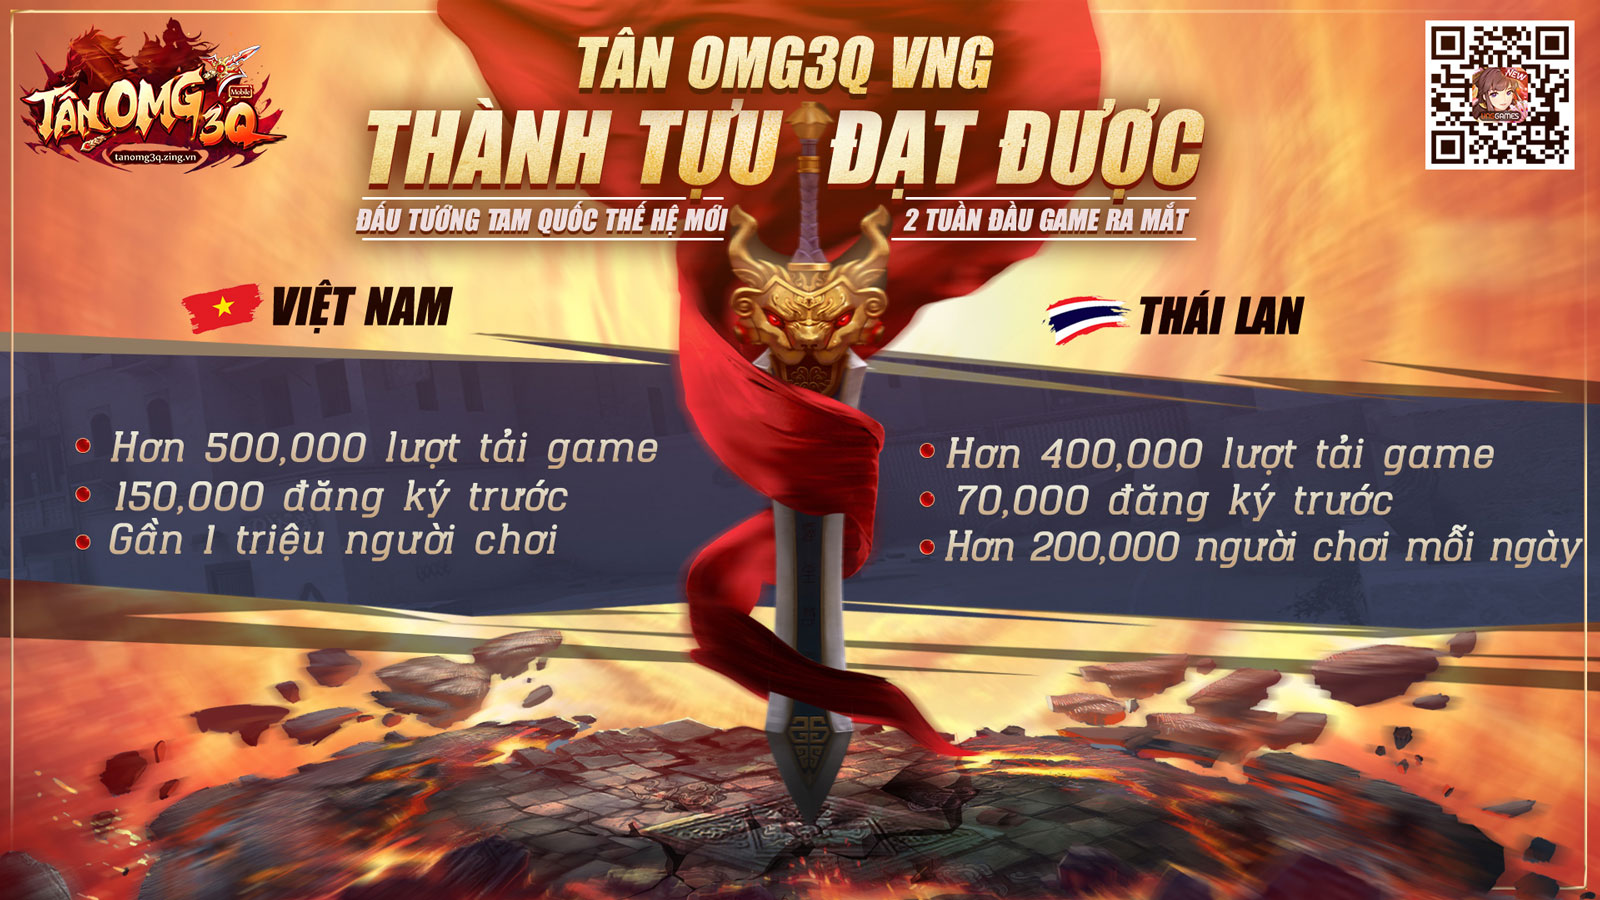 Lý Minh Thuận & Phạm Văn Phương trở thành đại sứ thương hiệu của Tân OMG3Q